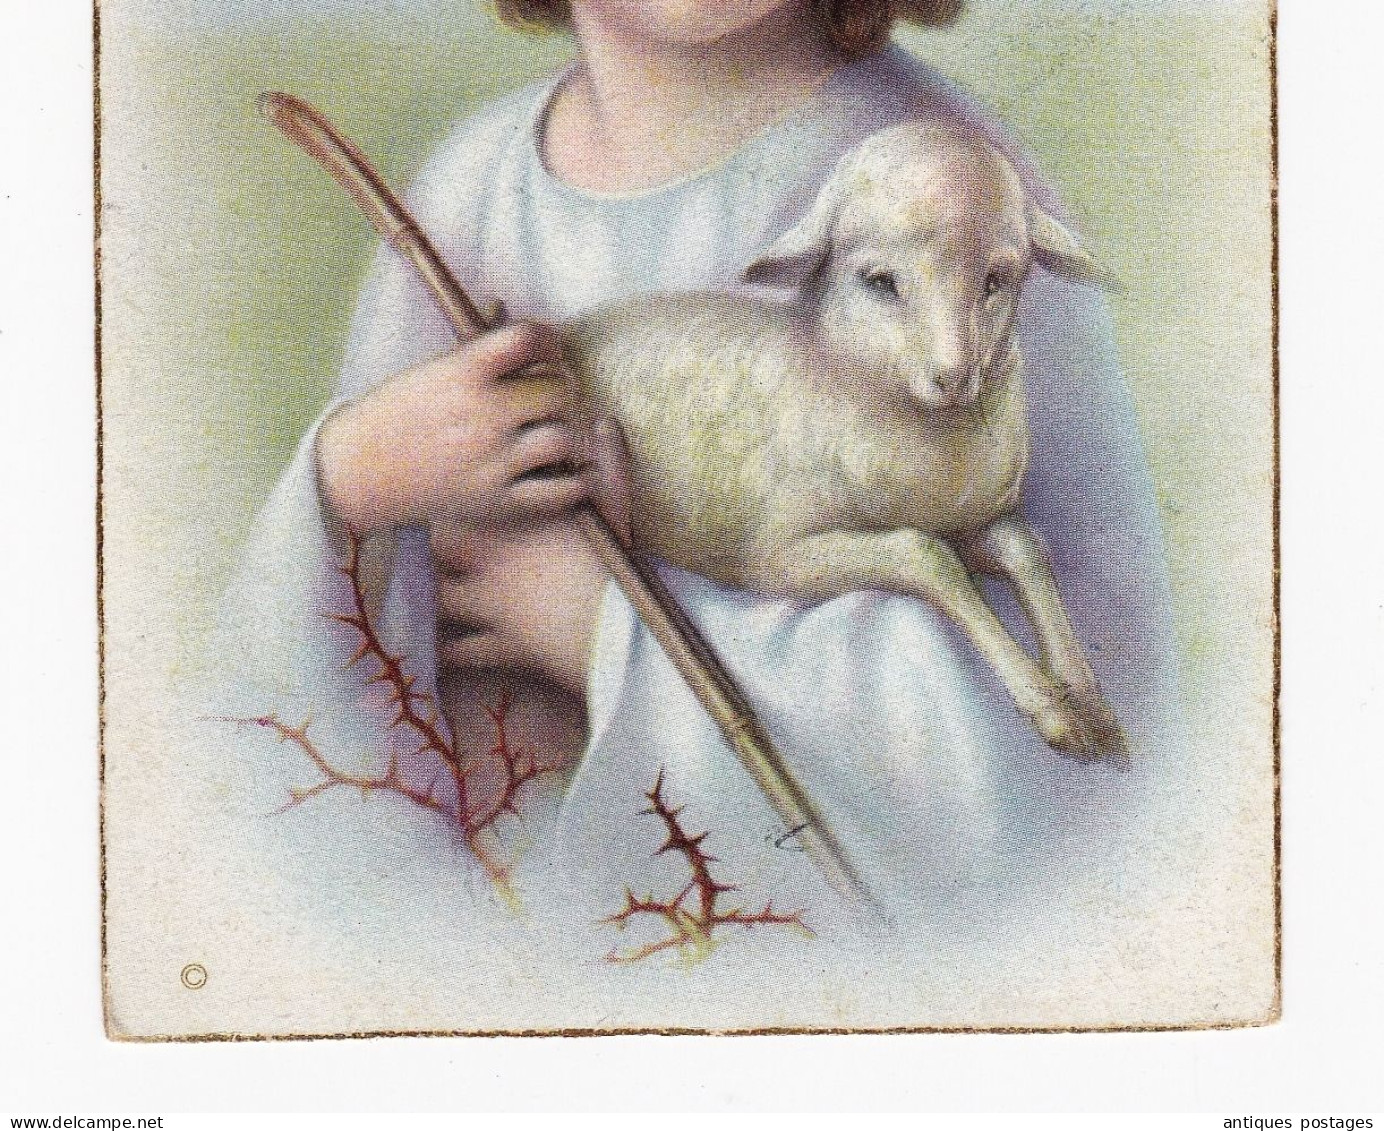 Carte Postale Tubize Tubeke Begique Waterloo Joyeuses Pâques Ostern Pascua Easter Pasqua - Pasen